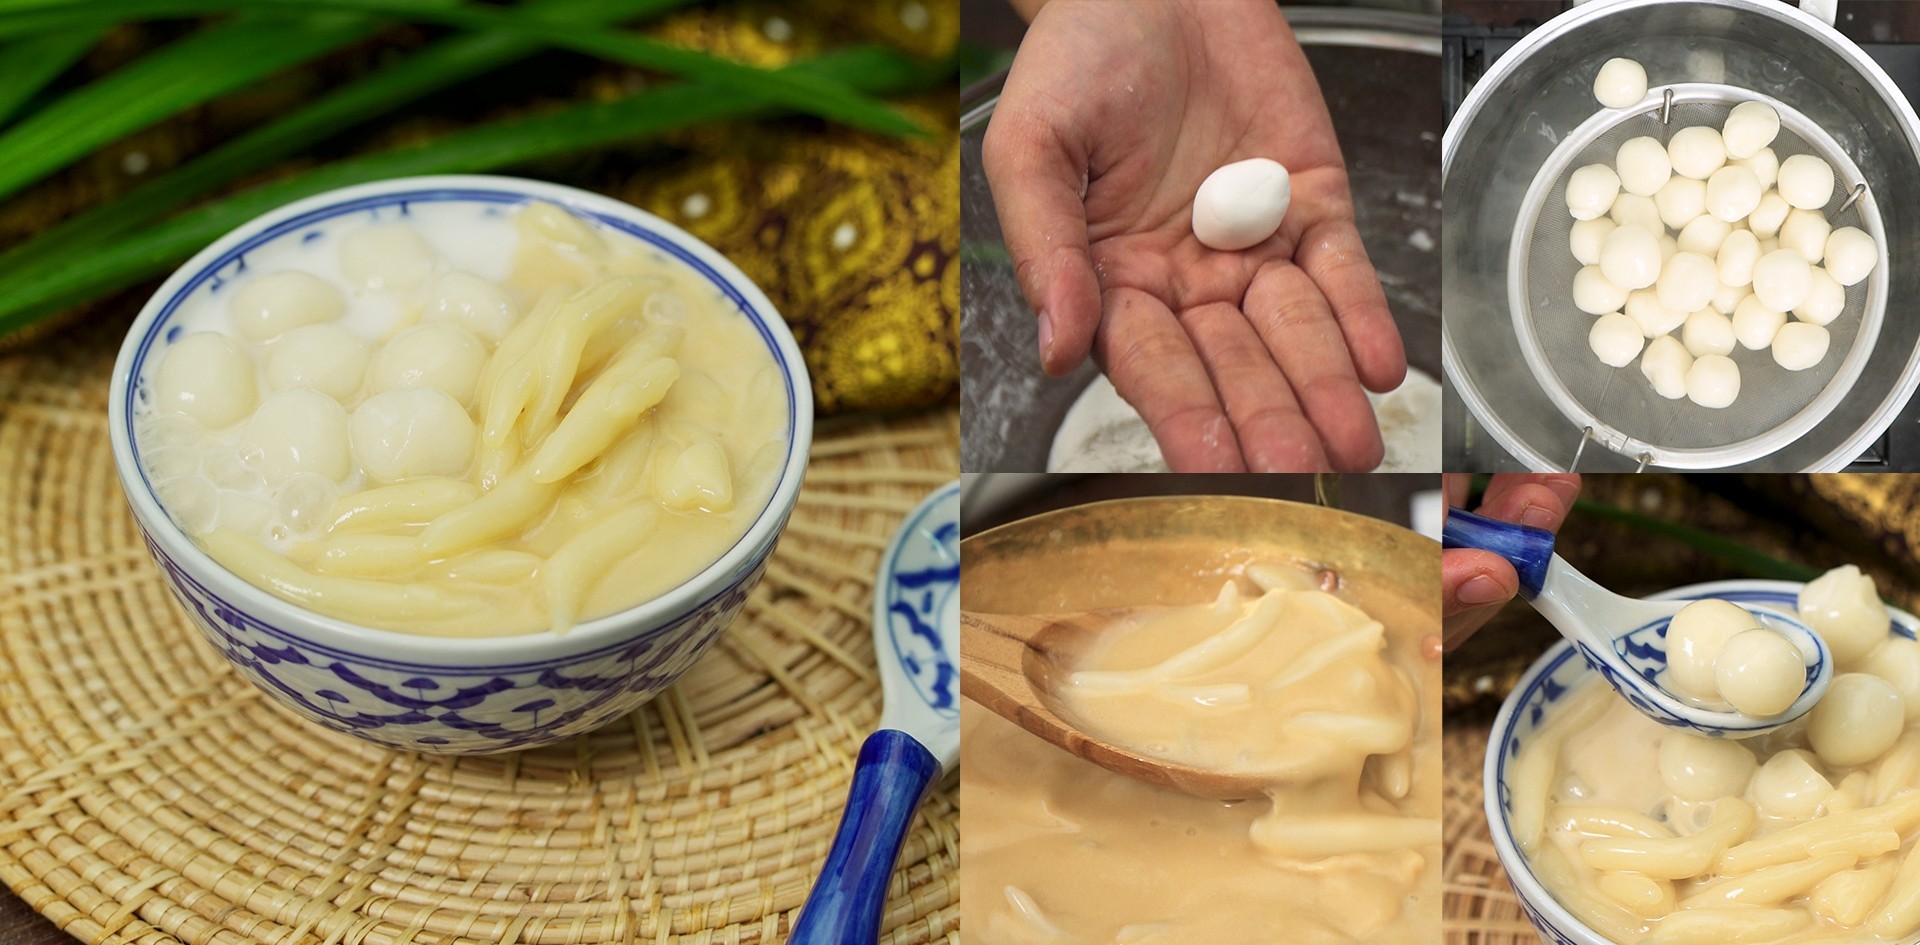 วิธีทำ“ปลากริมไข่เต่า”เมนูของหวานสไตล์โบราณหวานมันเค็มในถ้วยเดียว เมนูอาหารว่าง